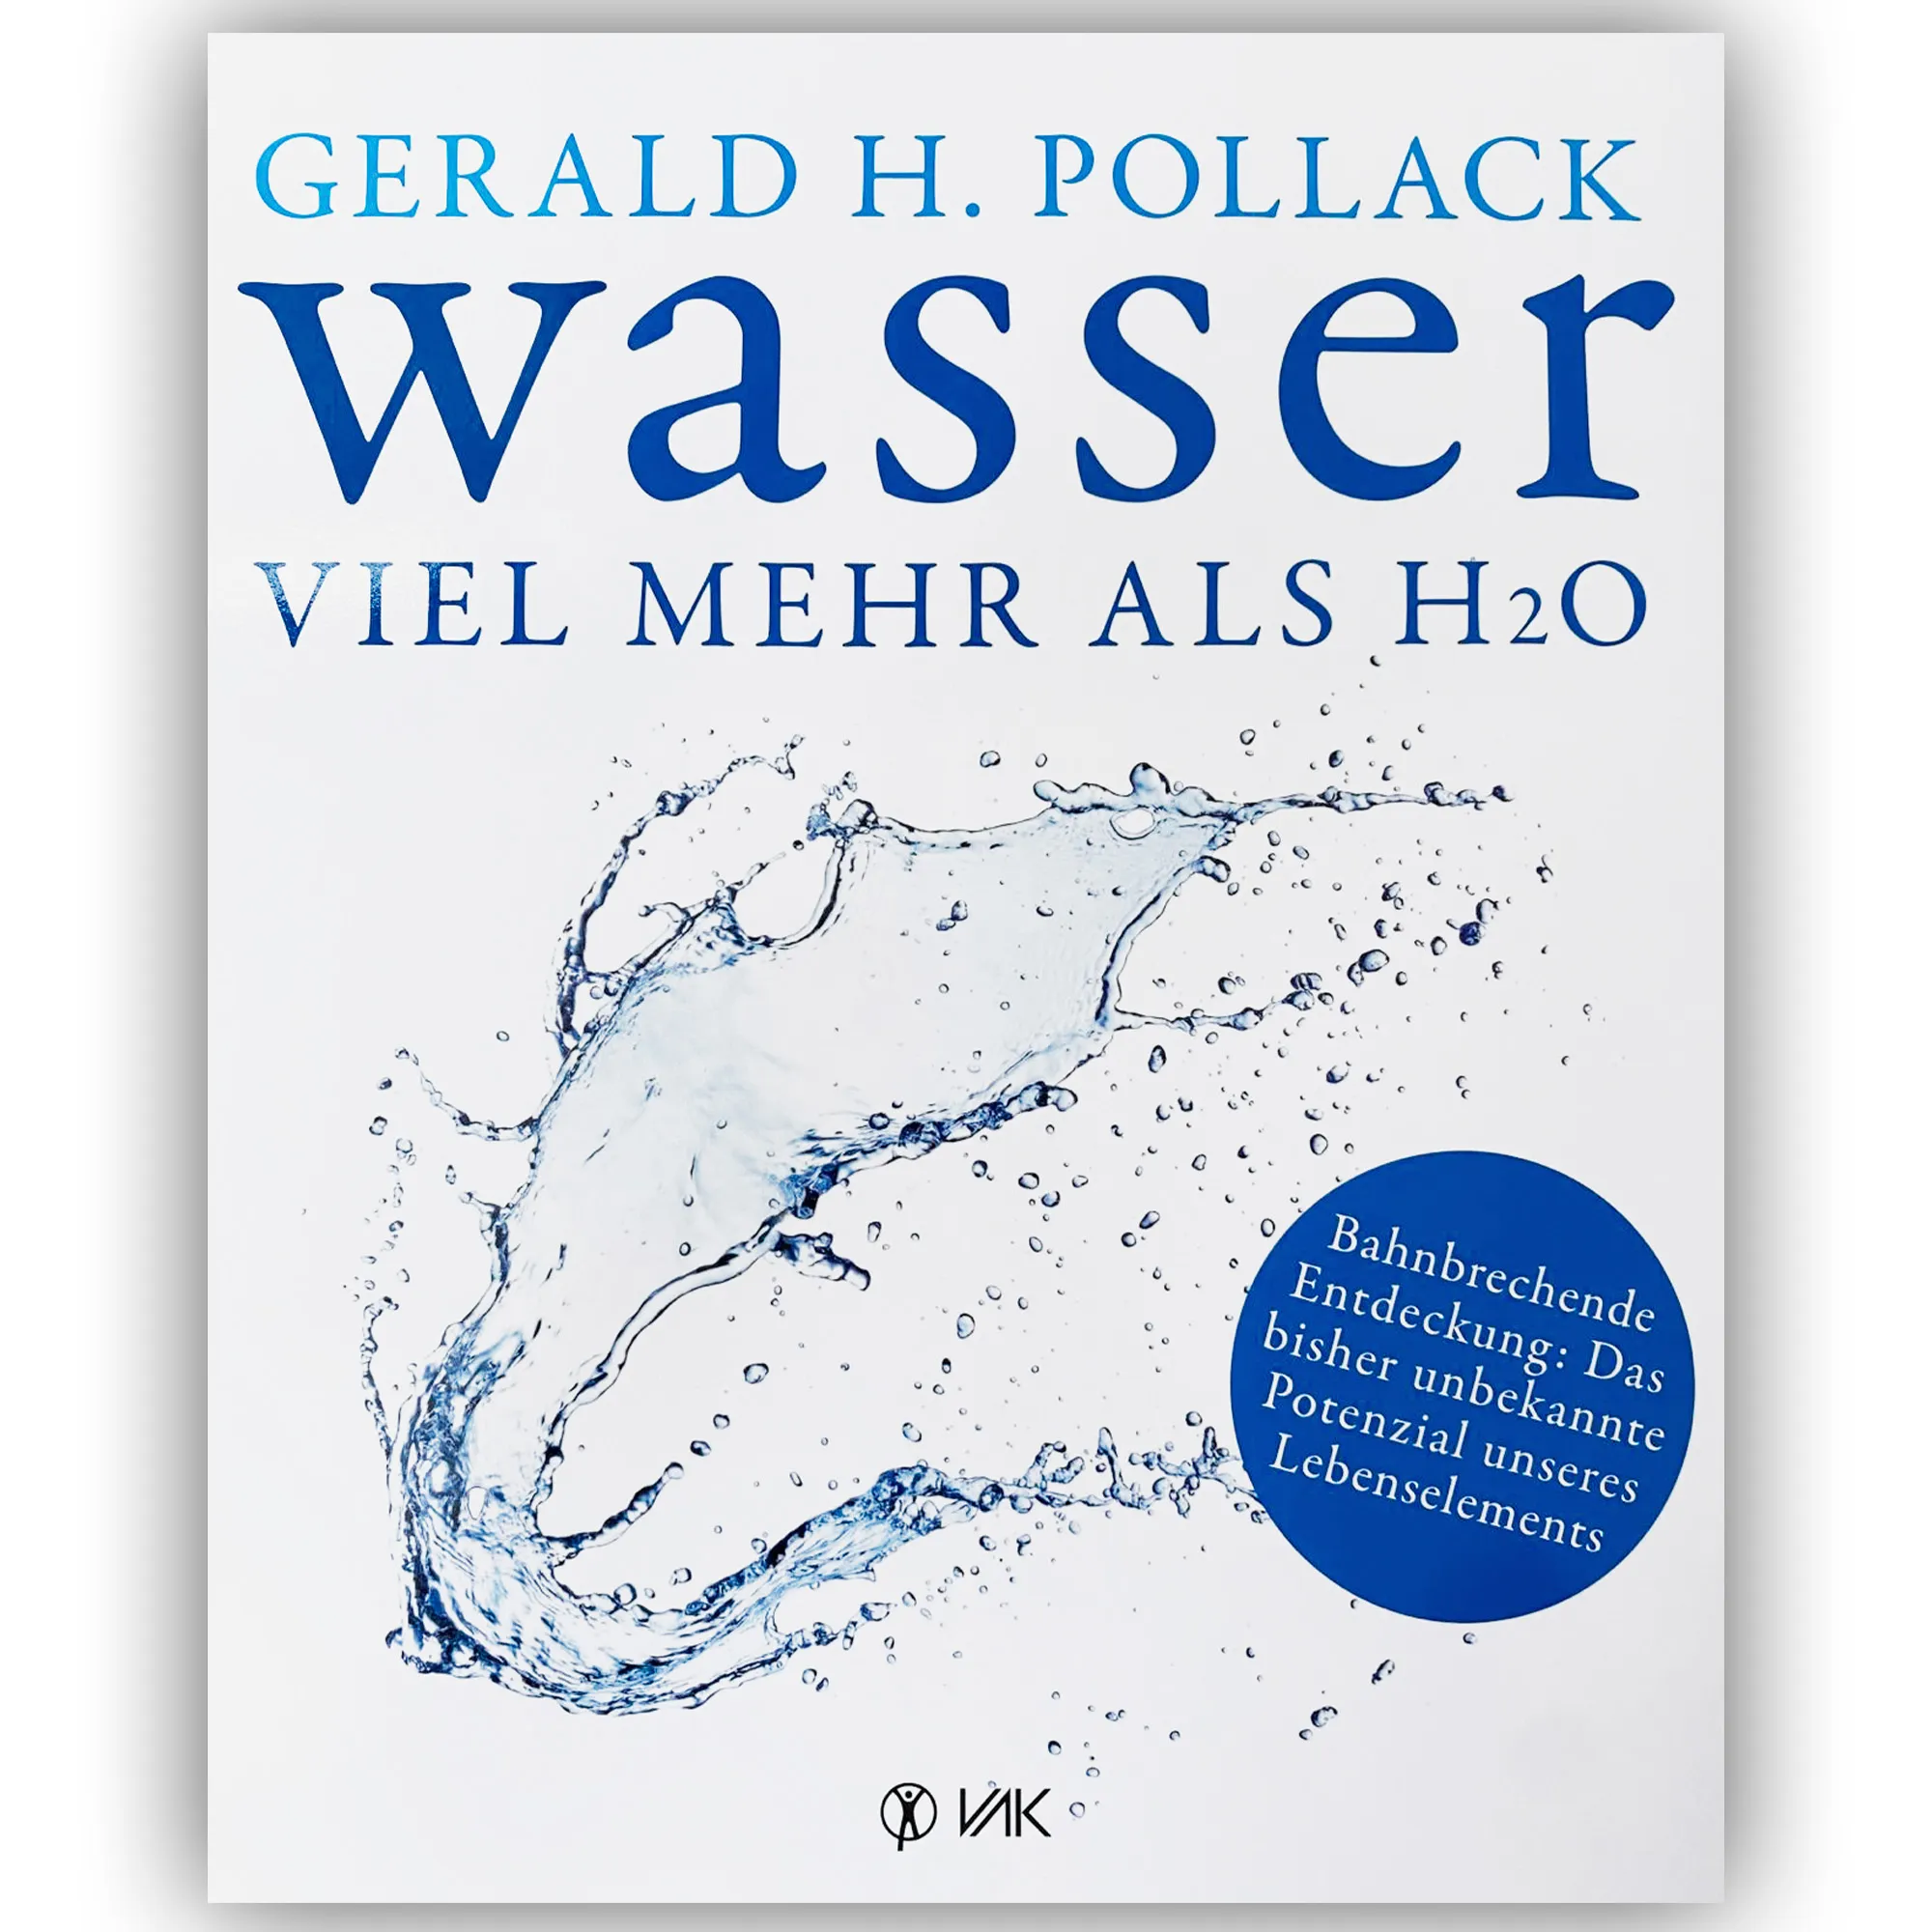 Zu sehen ist das Cover des Buches „Wasser viel mehr als H2O von Gerald H. Pollack auf weißem Untergrund. Der Einband ist weiß glänzend, die Schrift blau. Bahnbrechende Entdeckungen: Das bisher unbekannte Potenzial unseres Lebenselements.